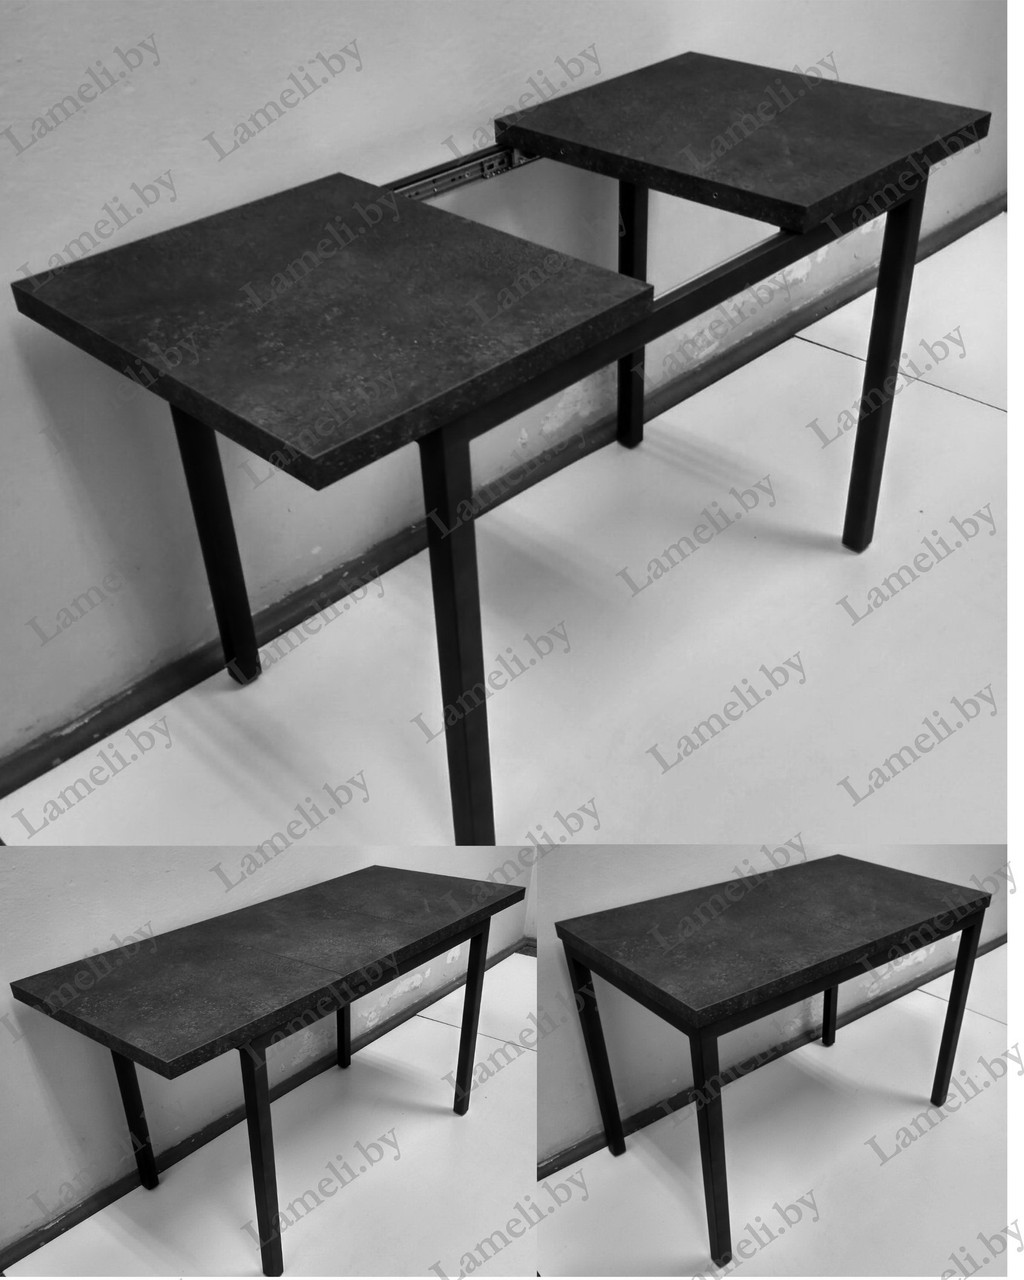 РАЗДВИЖНОЙ стол из массива дуба, ЛДСП или постформинга  на металлической раме серии Т. ЛЮБОЙ размер и цвет.